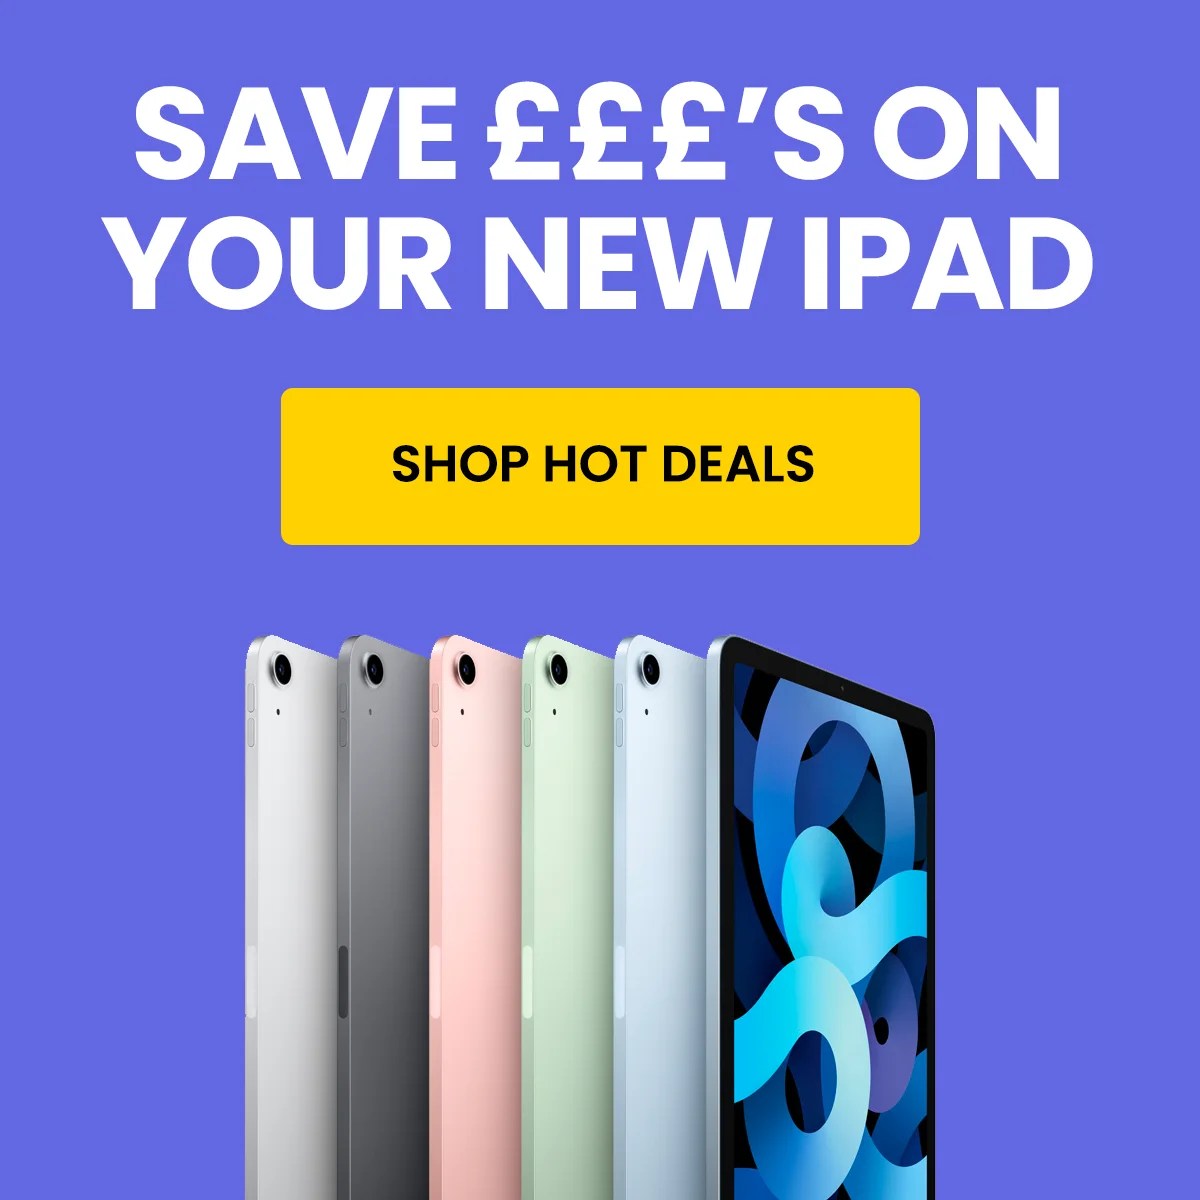 Refurbished iPad Hot Deals